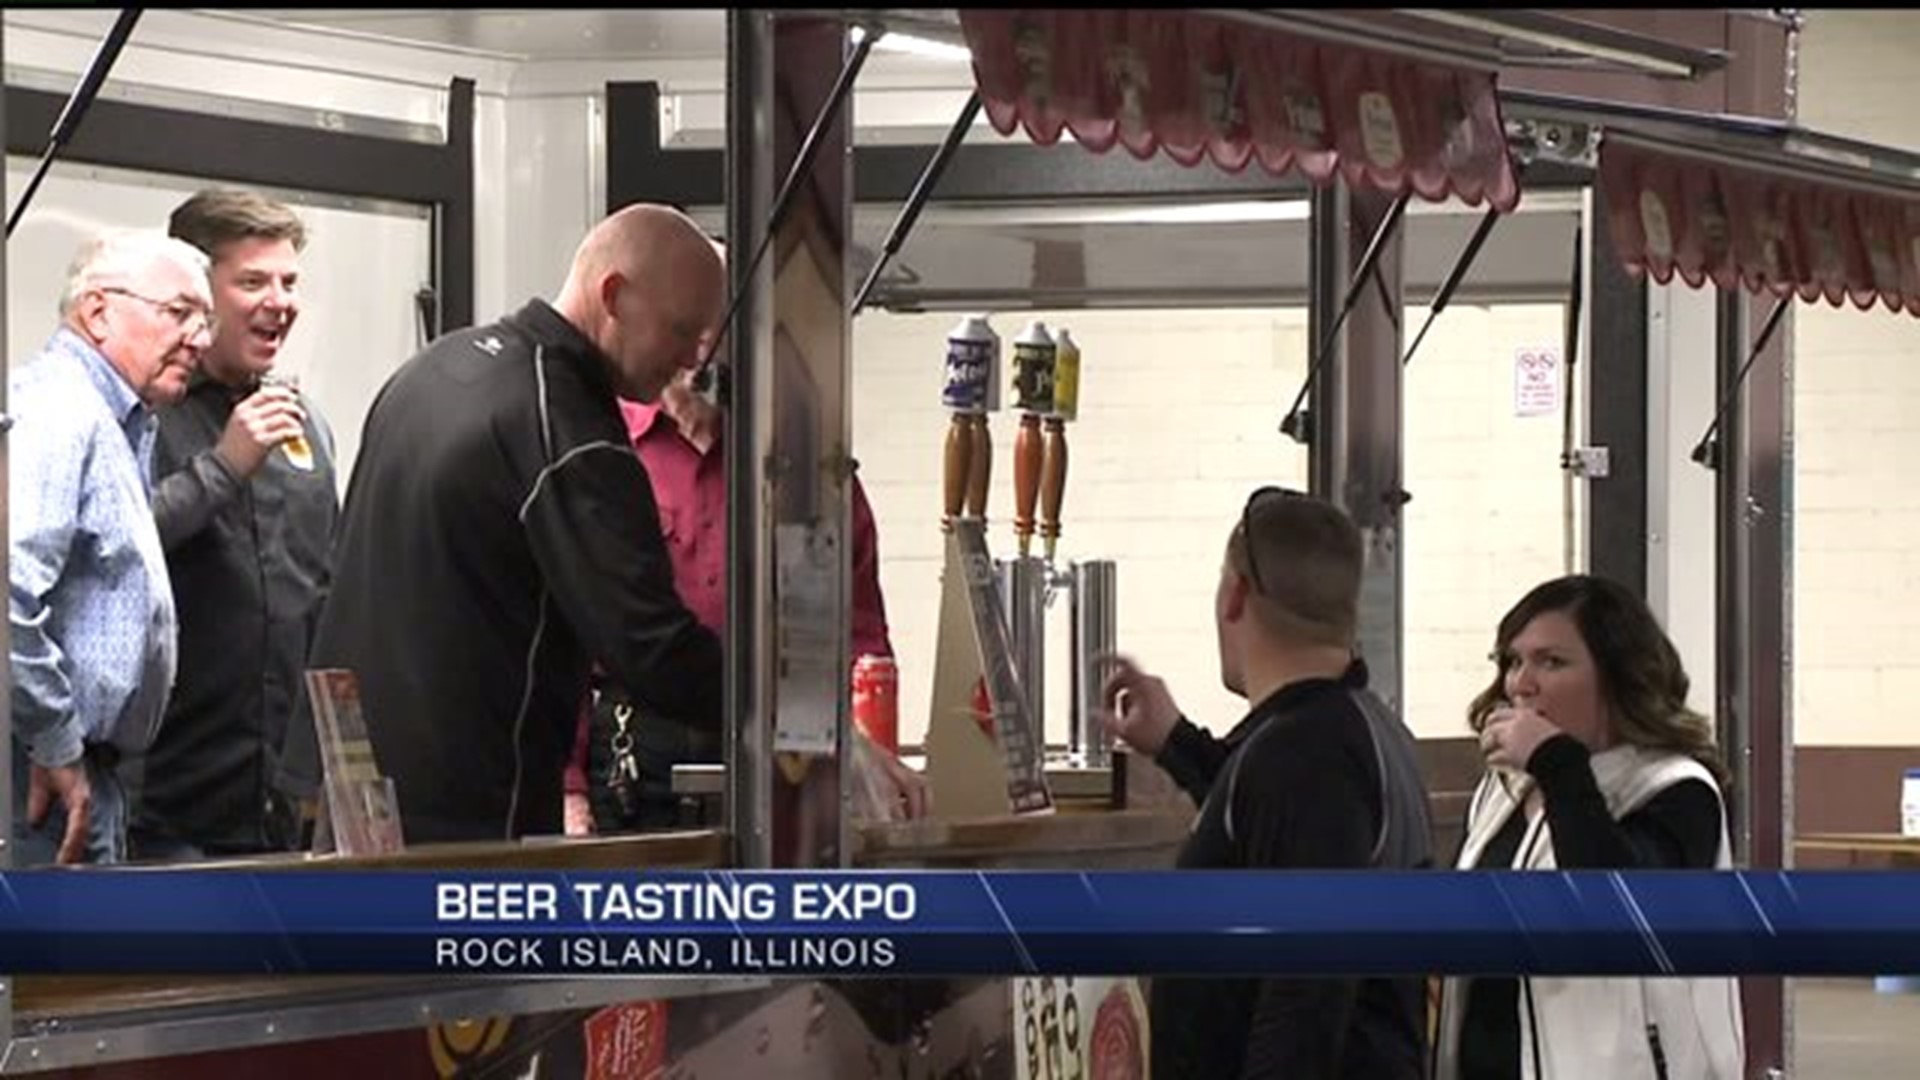 Beer tasting expo